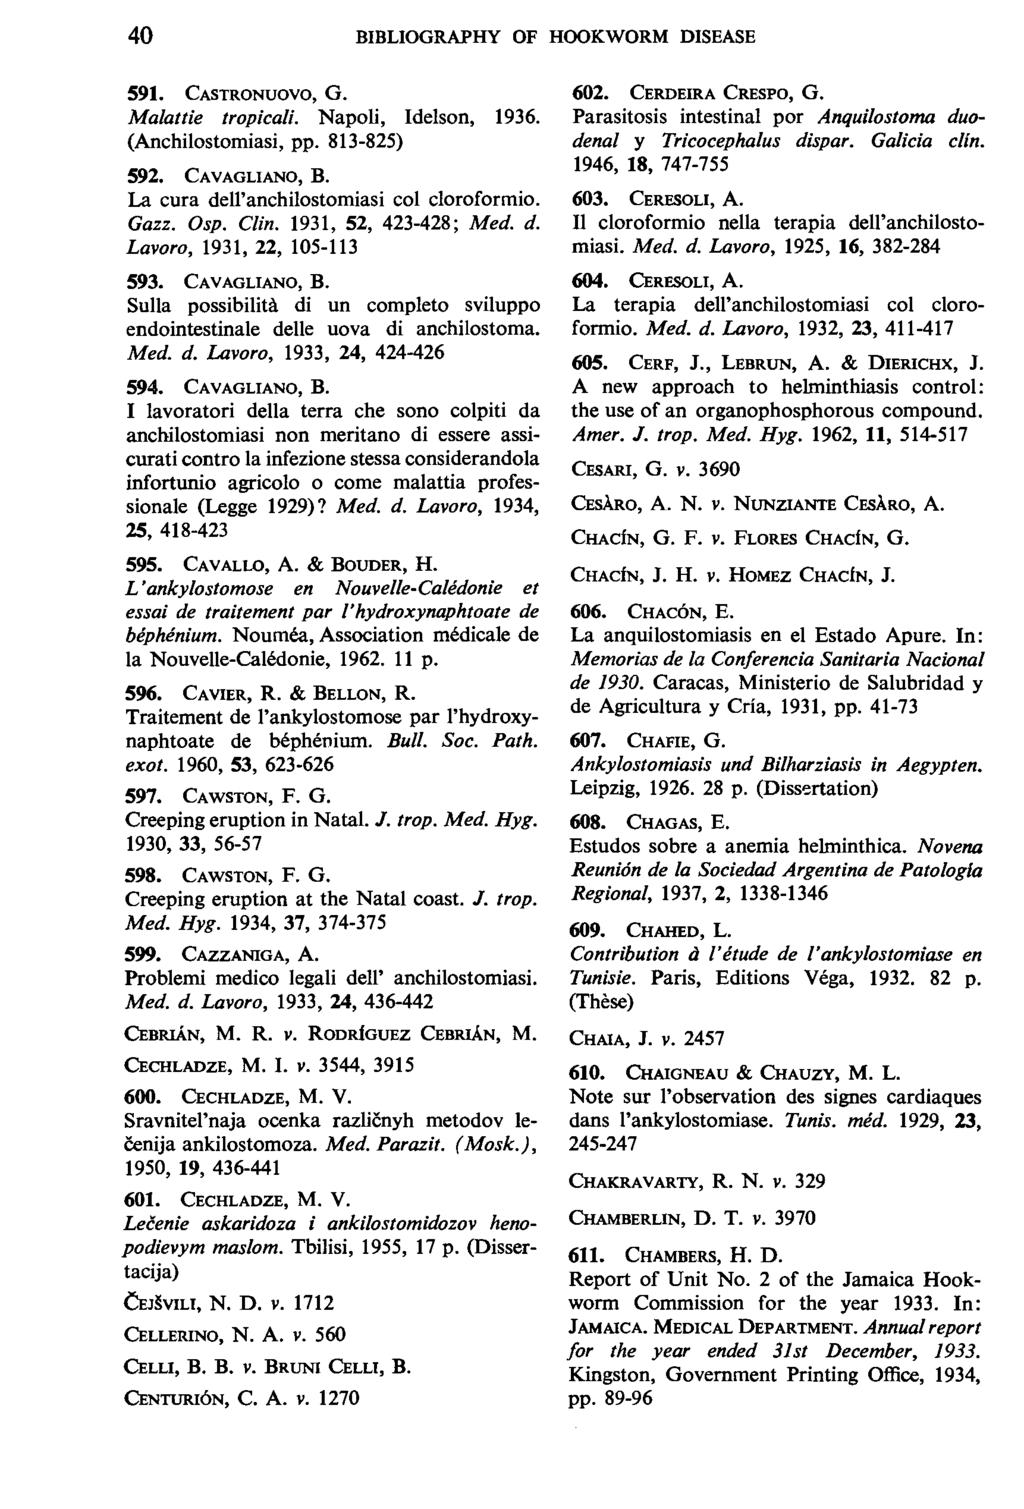 40 BIBLIOGRAPHY OF HOOKWORM DISEASE 591. CASTRONUOVO, G. Malattie tropicali. Napoli, Idelson, 1936. (Anchilostomiasi, pp. 813-825) 592. CAVAGLIANO, B. La cura dell'anchilostomiasi col cloroformio.